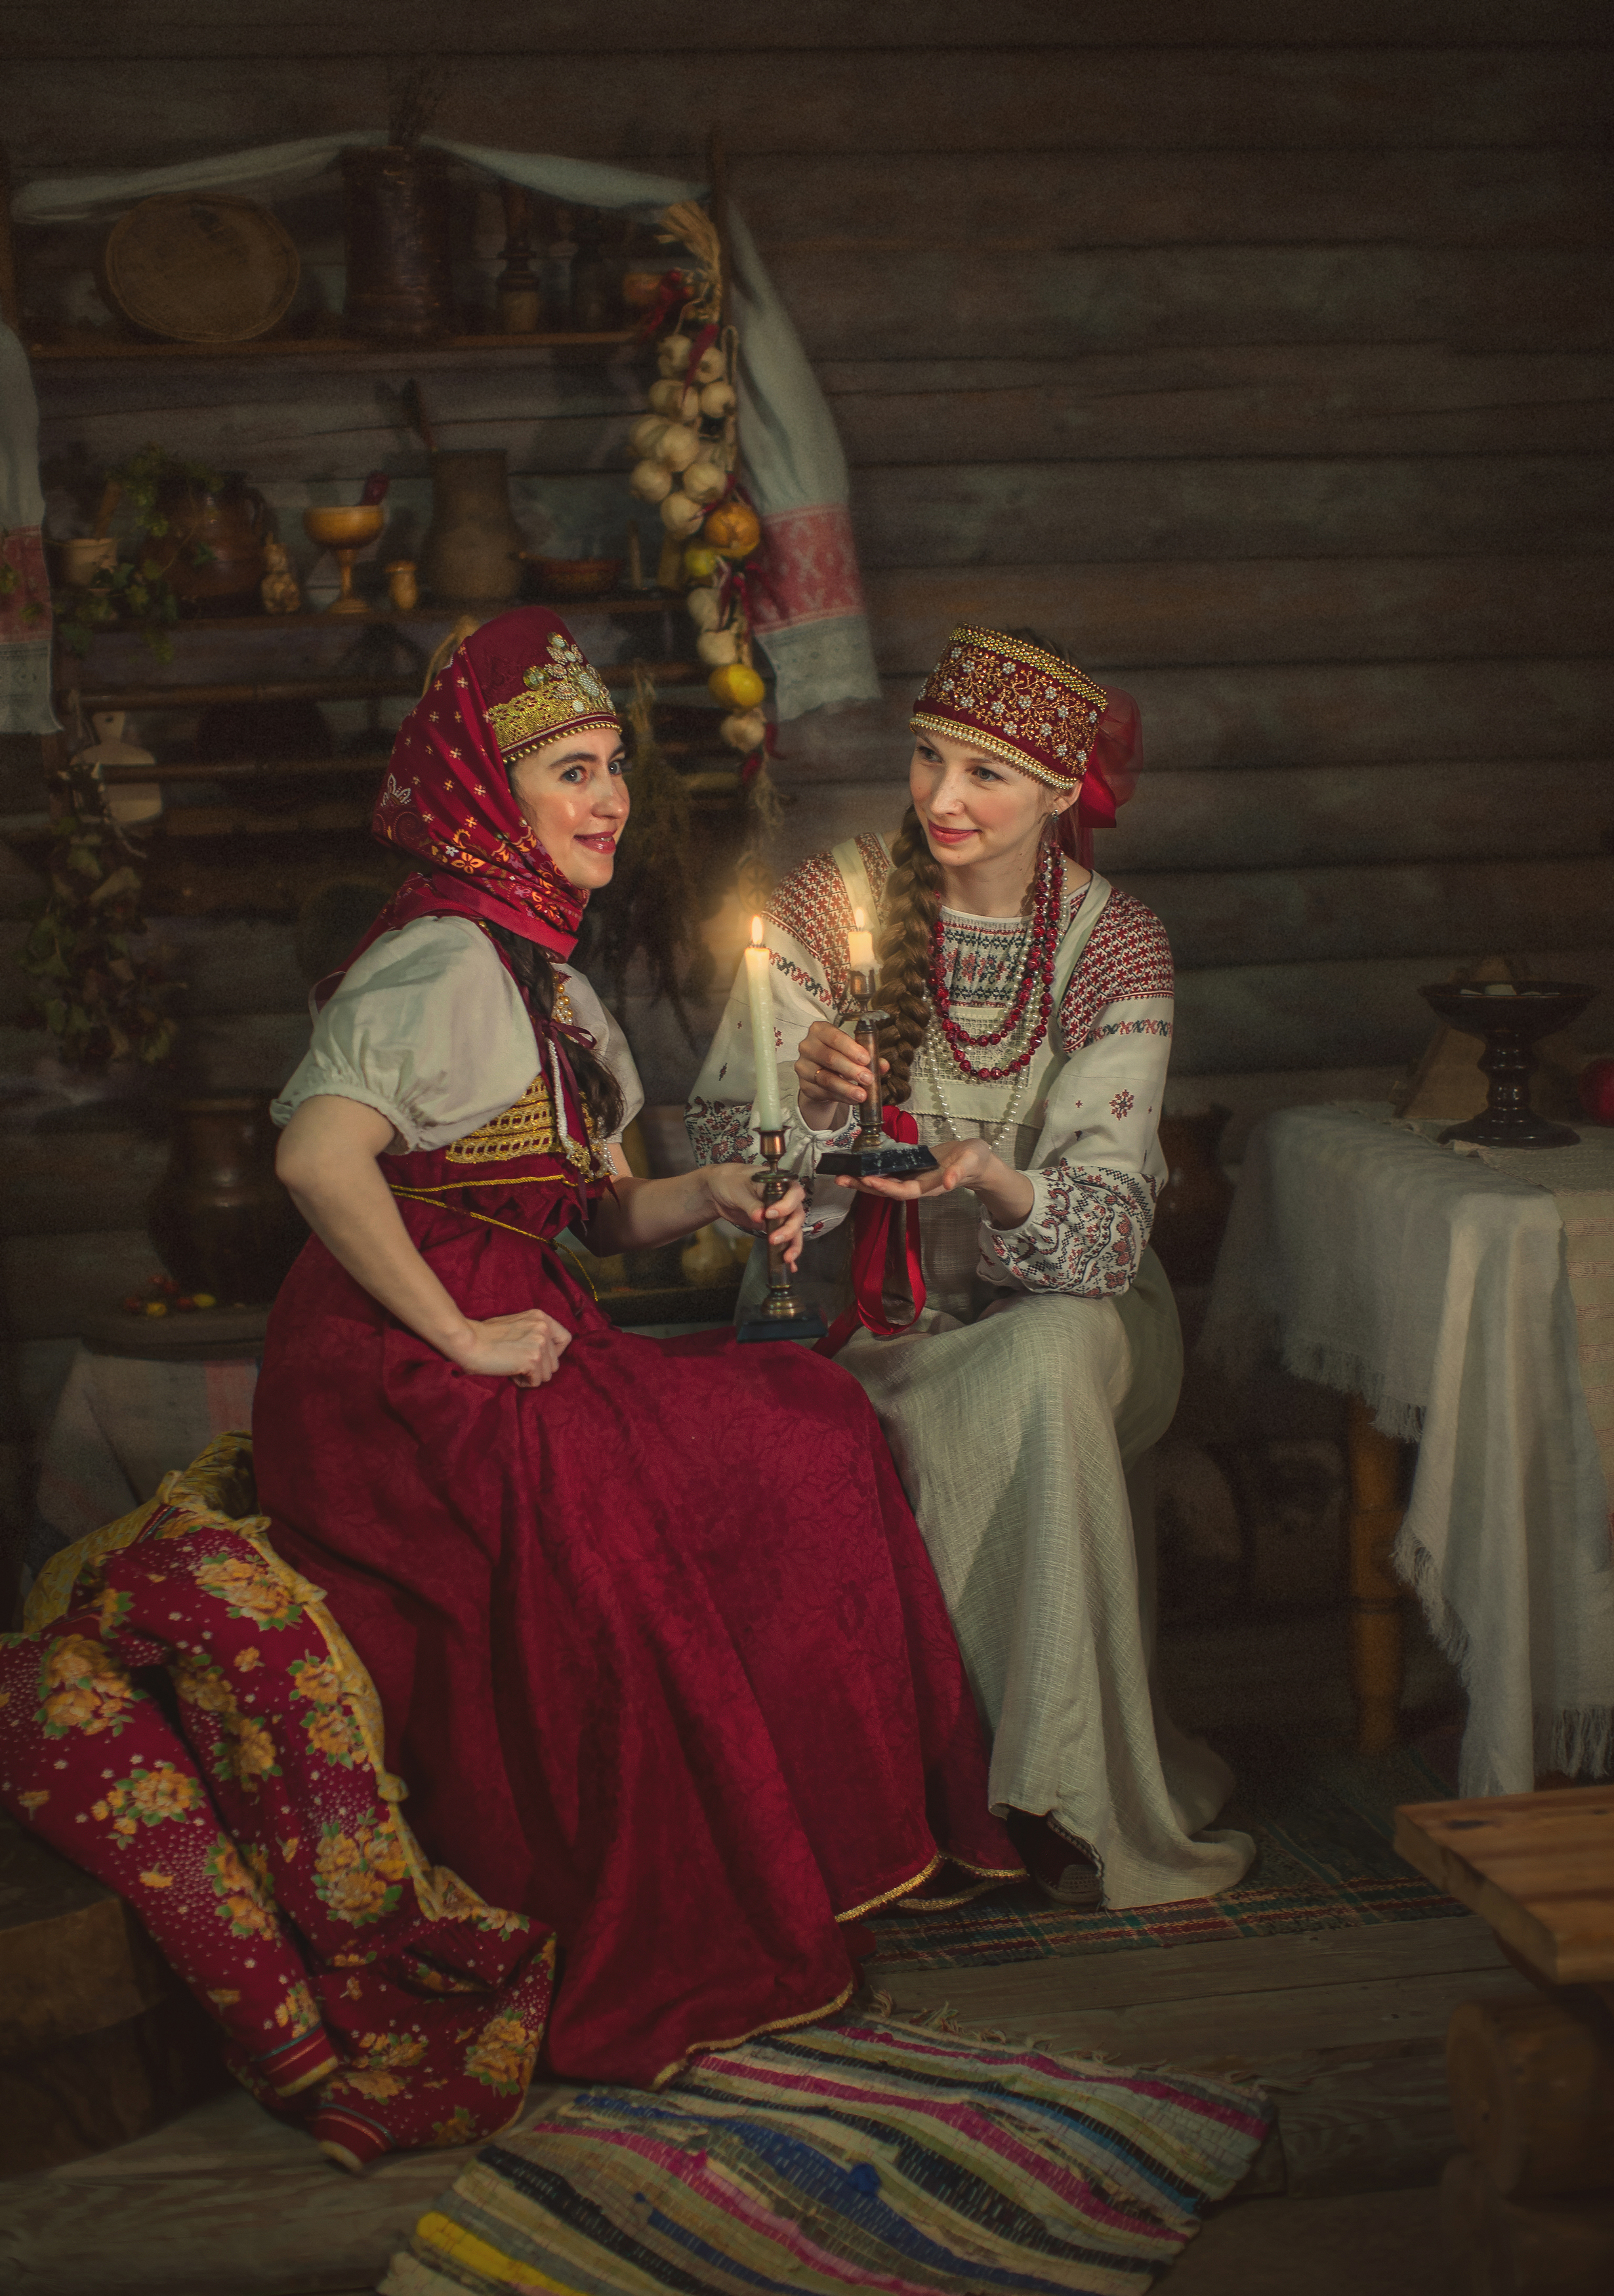 девушки гадания святки новый год старина изба волшебство фотография искусство свечи, Шепелева Татьяна